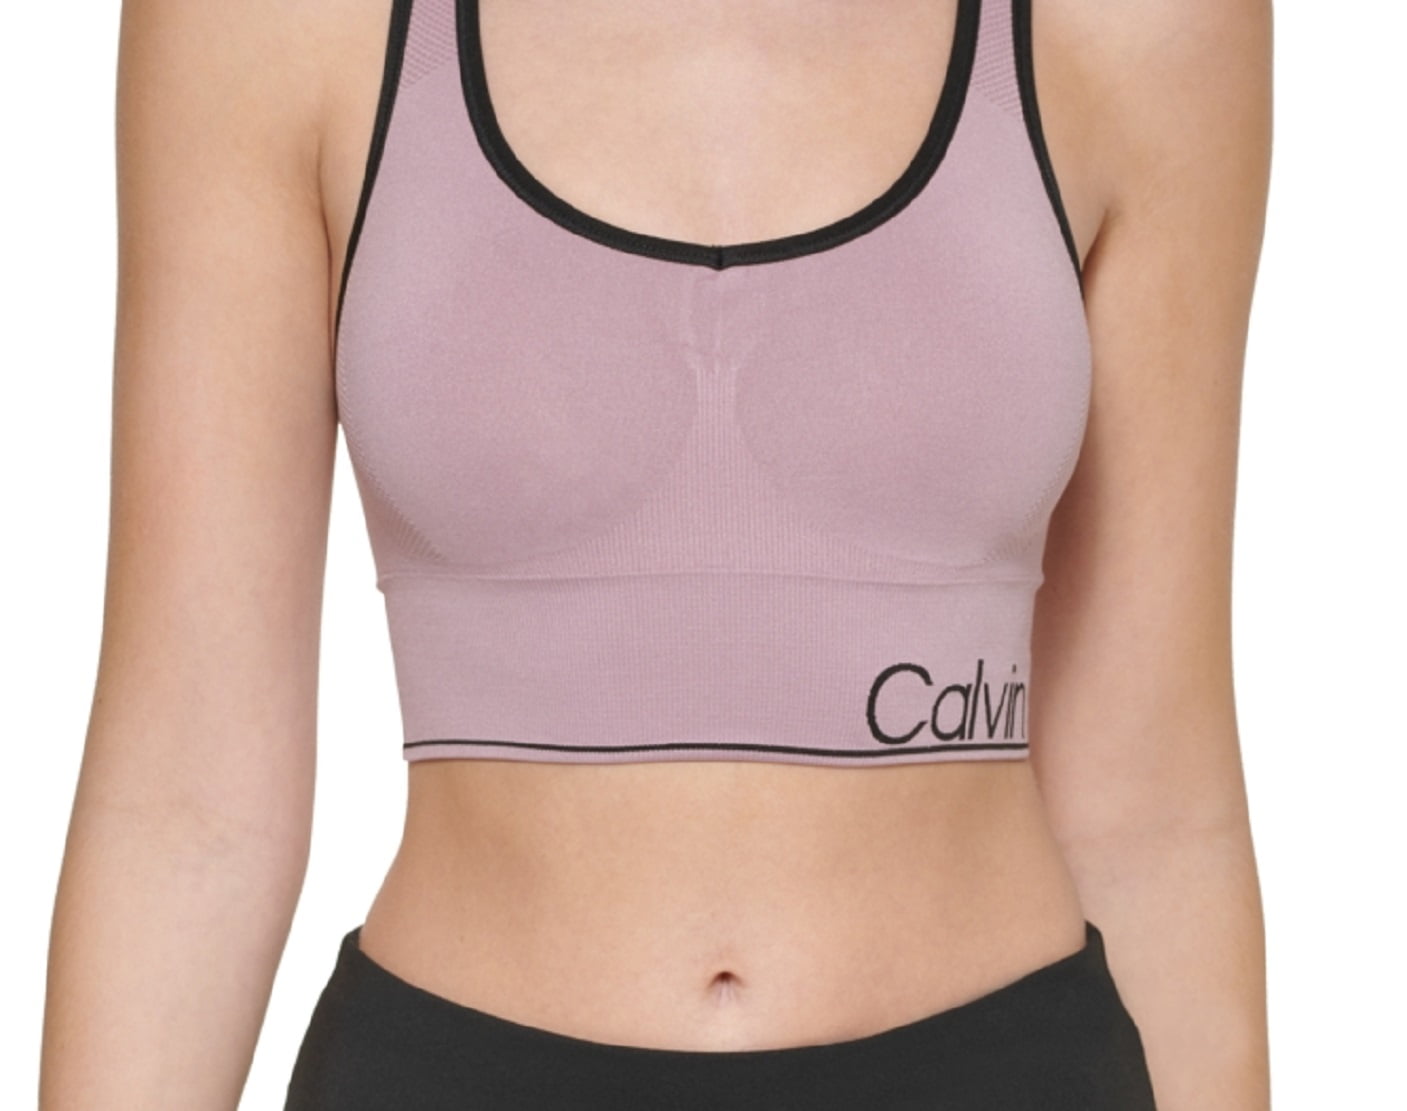 Calvin Klein Performance Medium support sports bra - amethyst